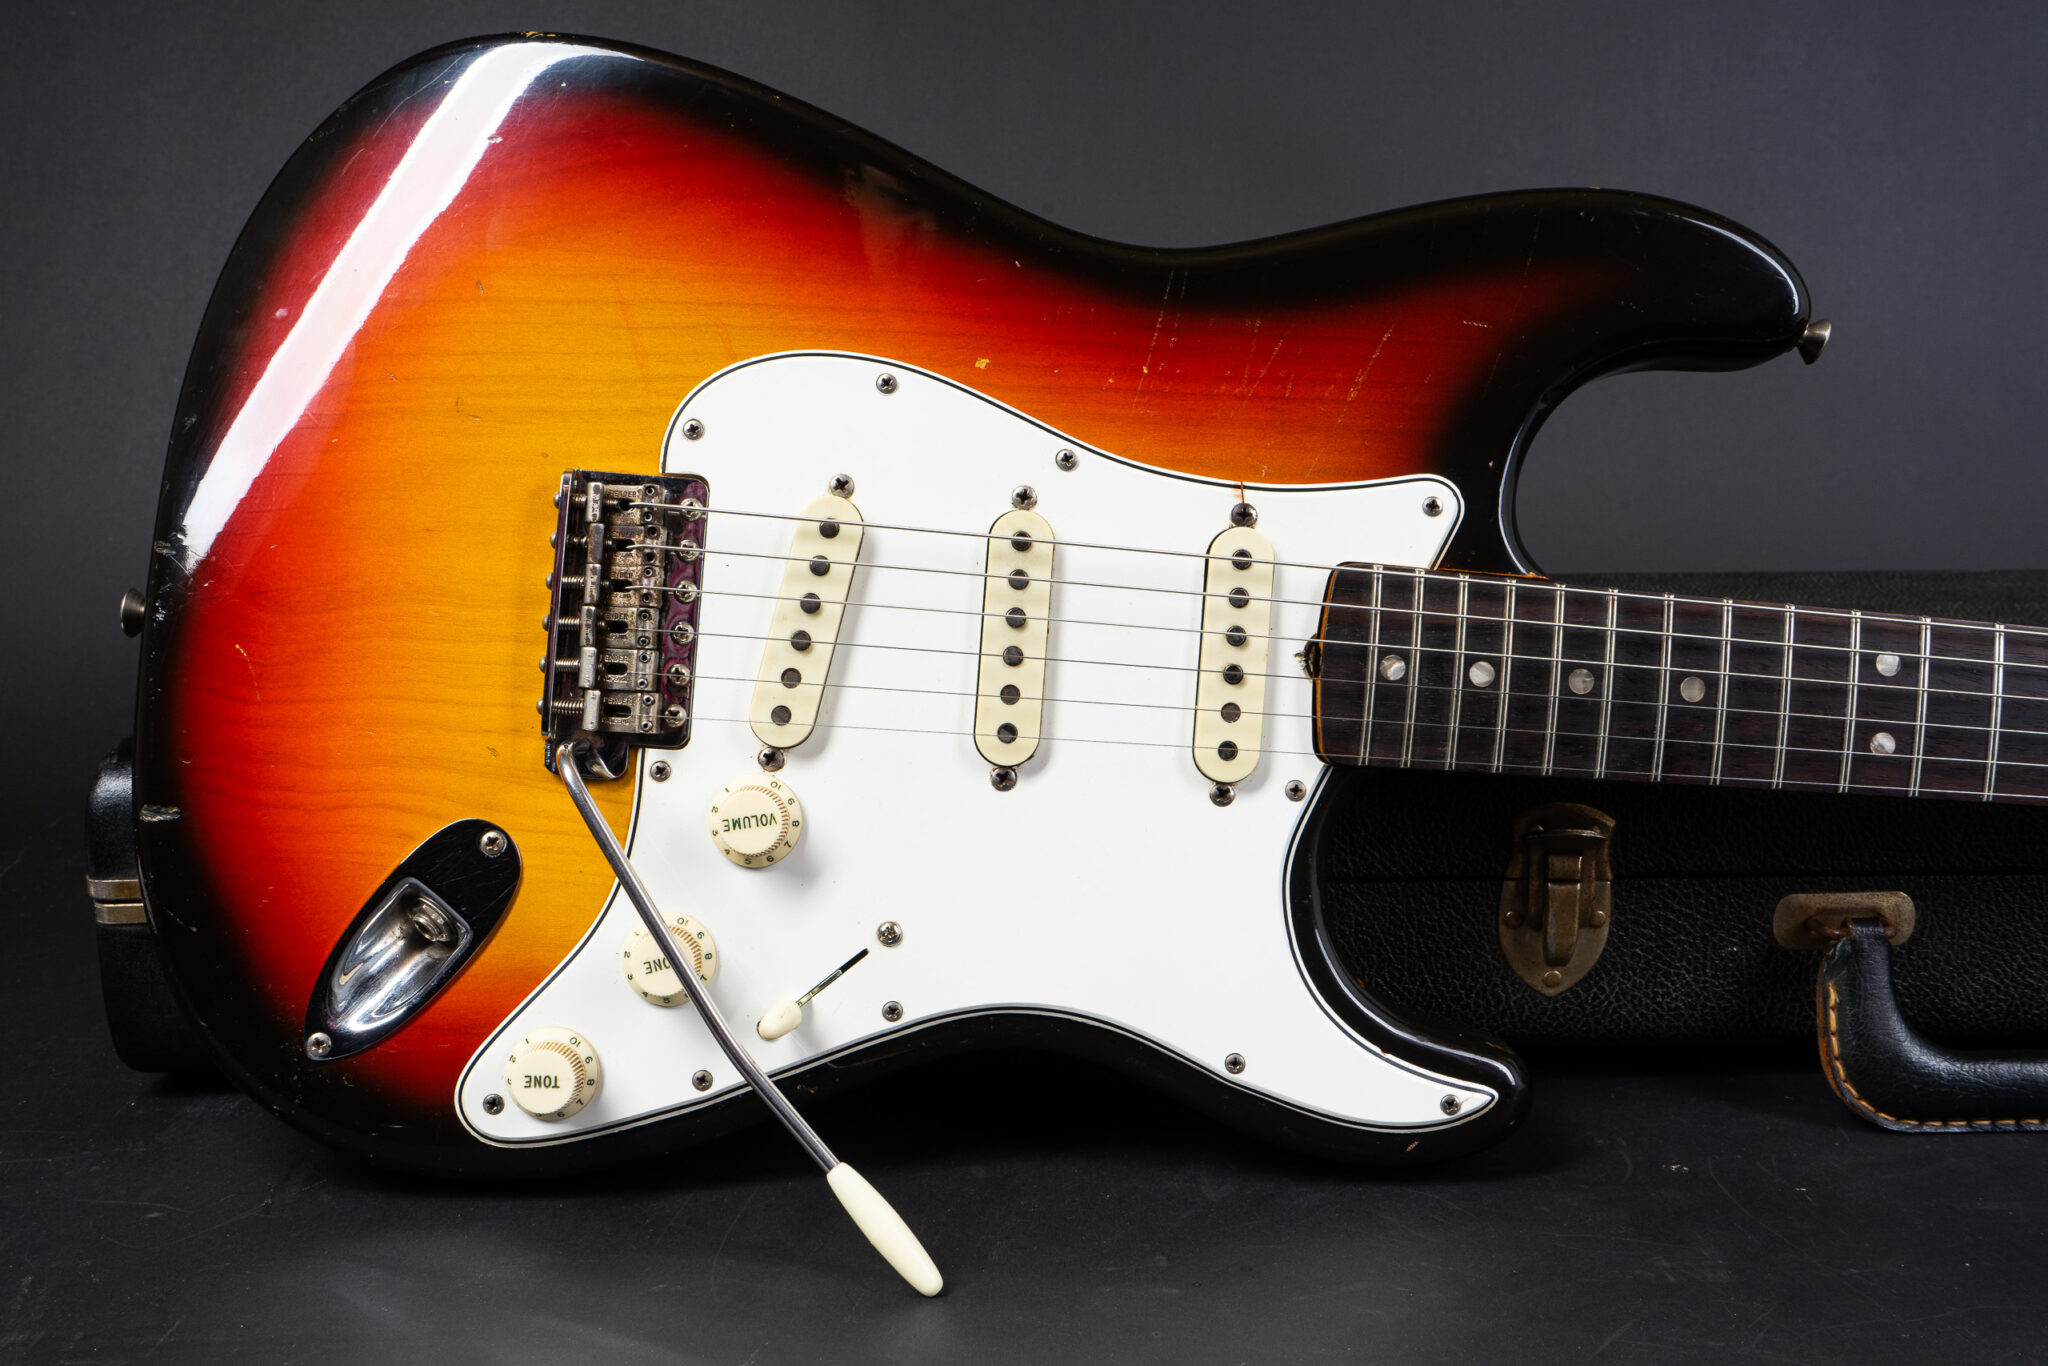 https://guitarpoint.de/app/uploads/products/1966-fender-stratocaster-sunburst-2/1966-Fender-Stratocaster-Sunburst-117295-11-2048x1366.jpg